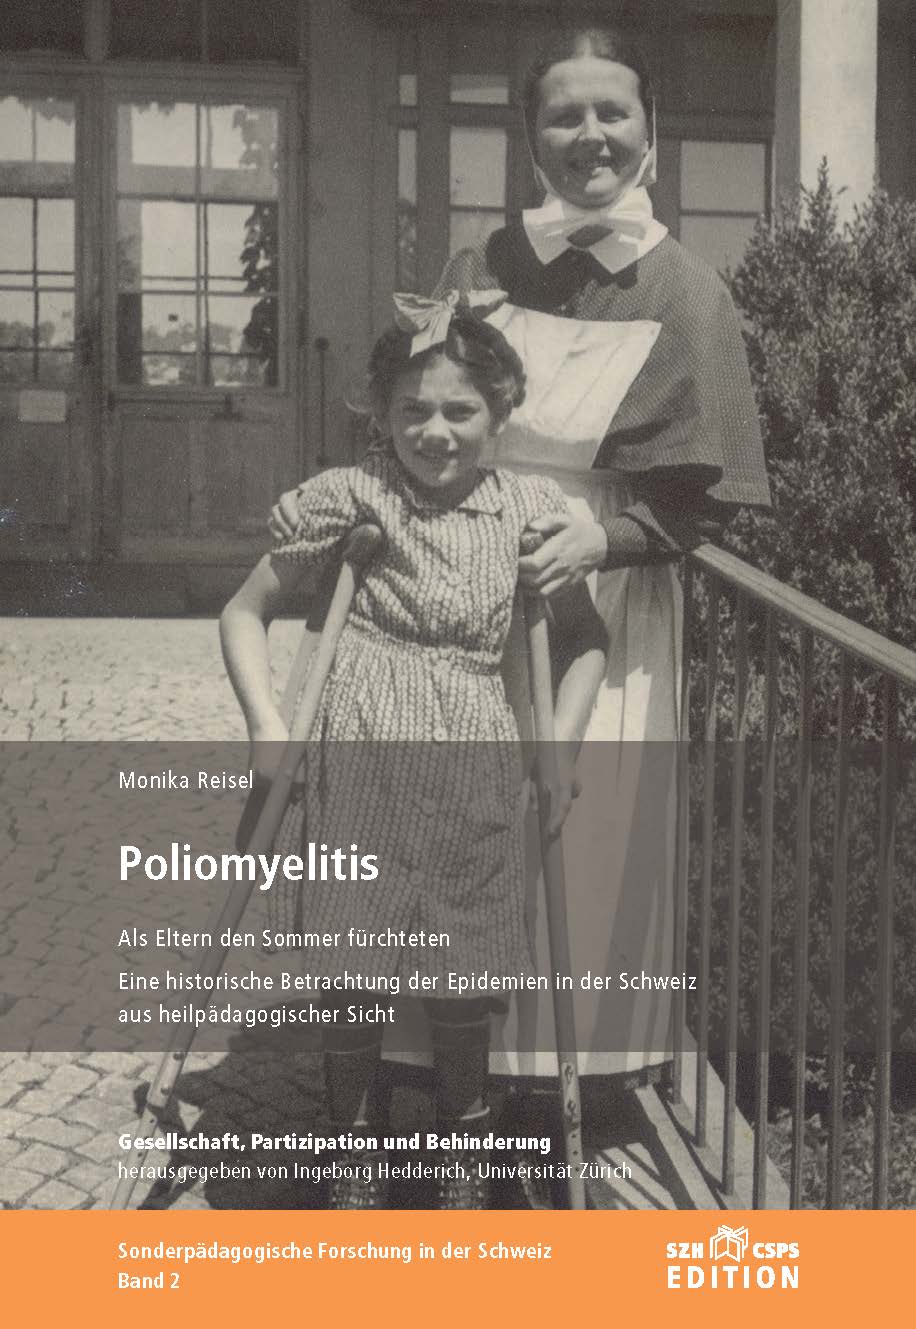  L’image montre la couverture du livre. On y voit une photo historique avec un enfant sur 2 béquilles et une infirmière. 